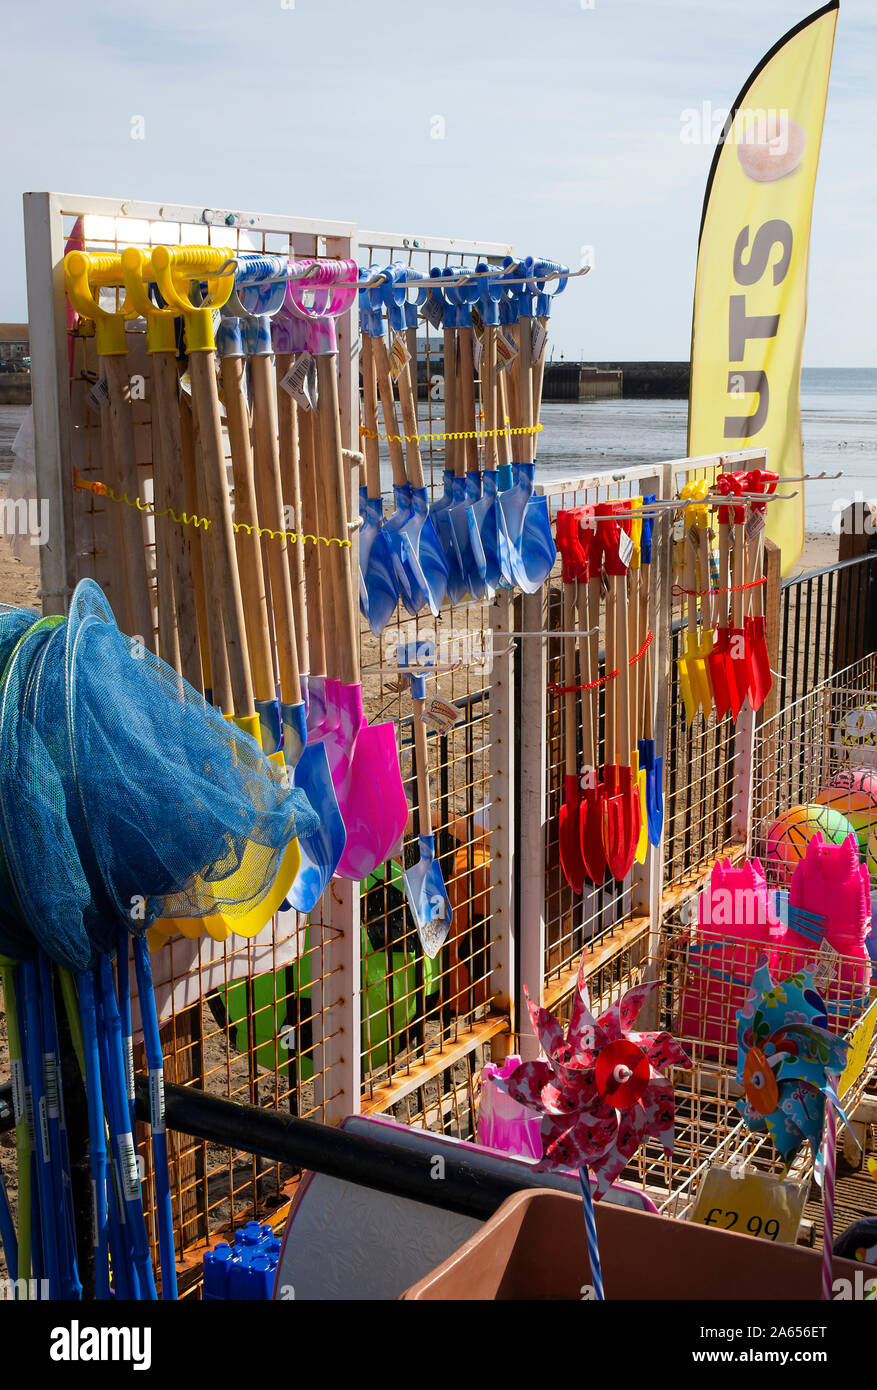 Jouets de plage colorés, seaux et pique, filets de pêche, balles de plage Windrills et beignets à vendre à un Stall dans Scarborough Yorkshire Angleterre Royaume-Uni Banque D'Images